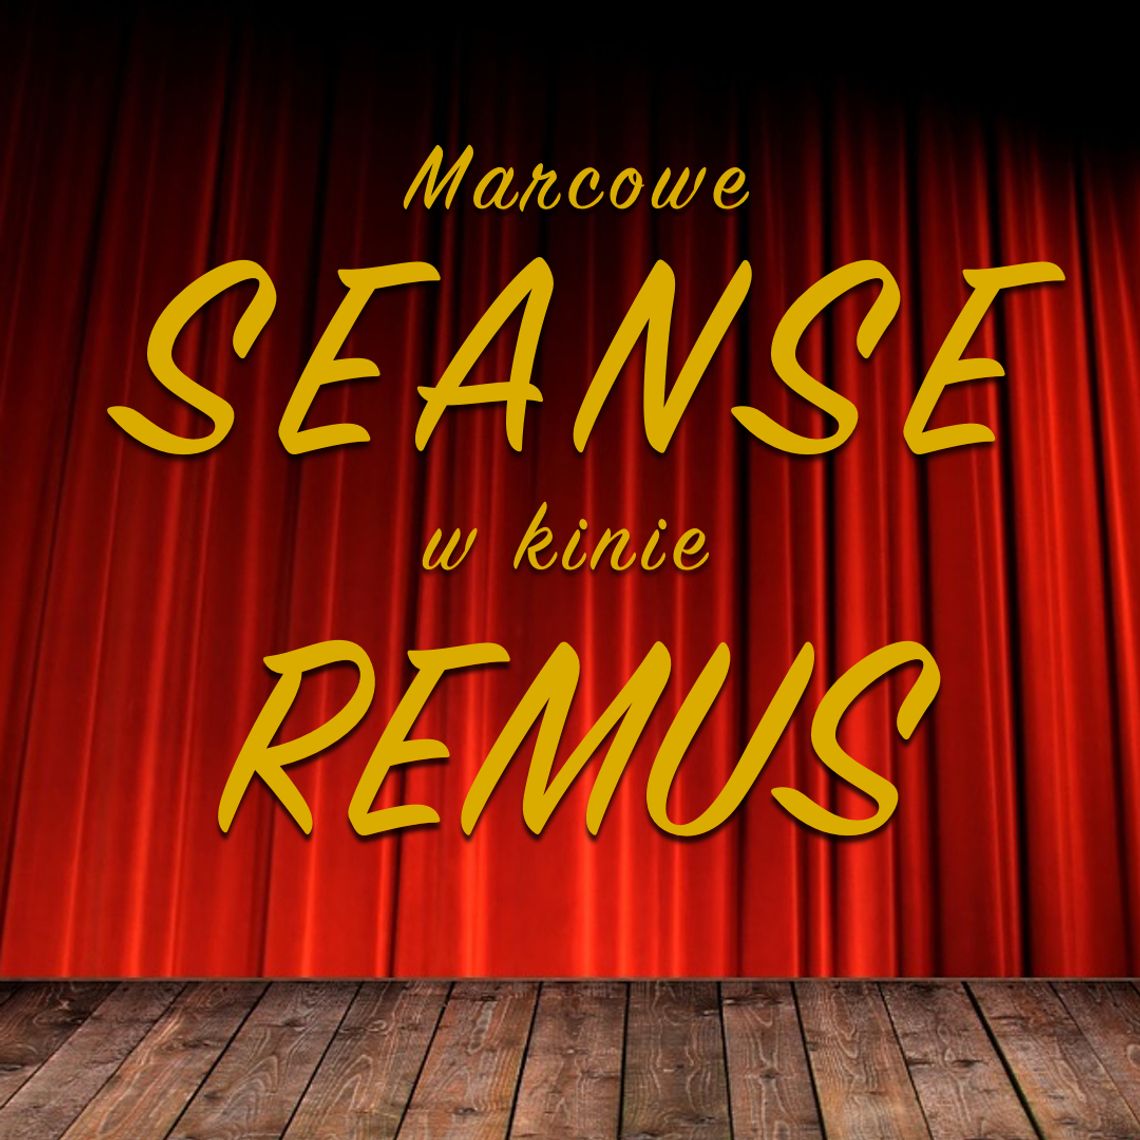 Marcowe seanse w kinie Remus